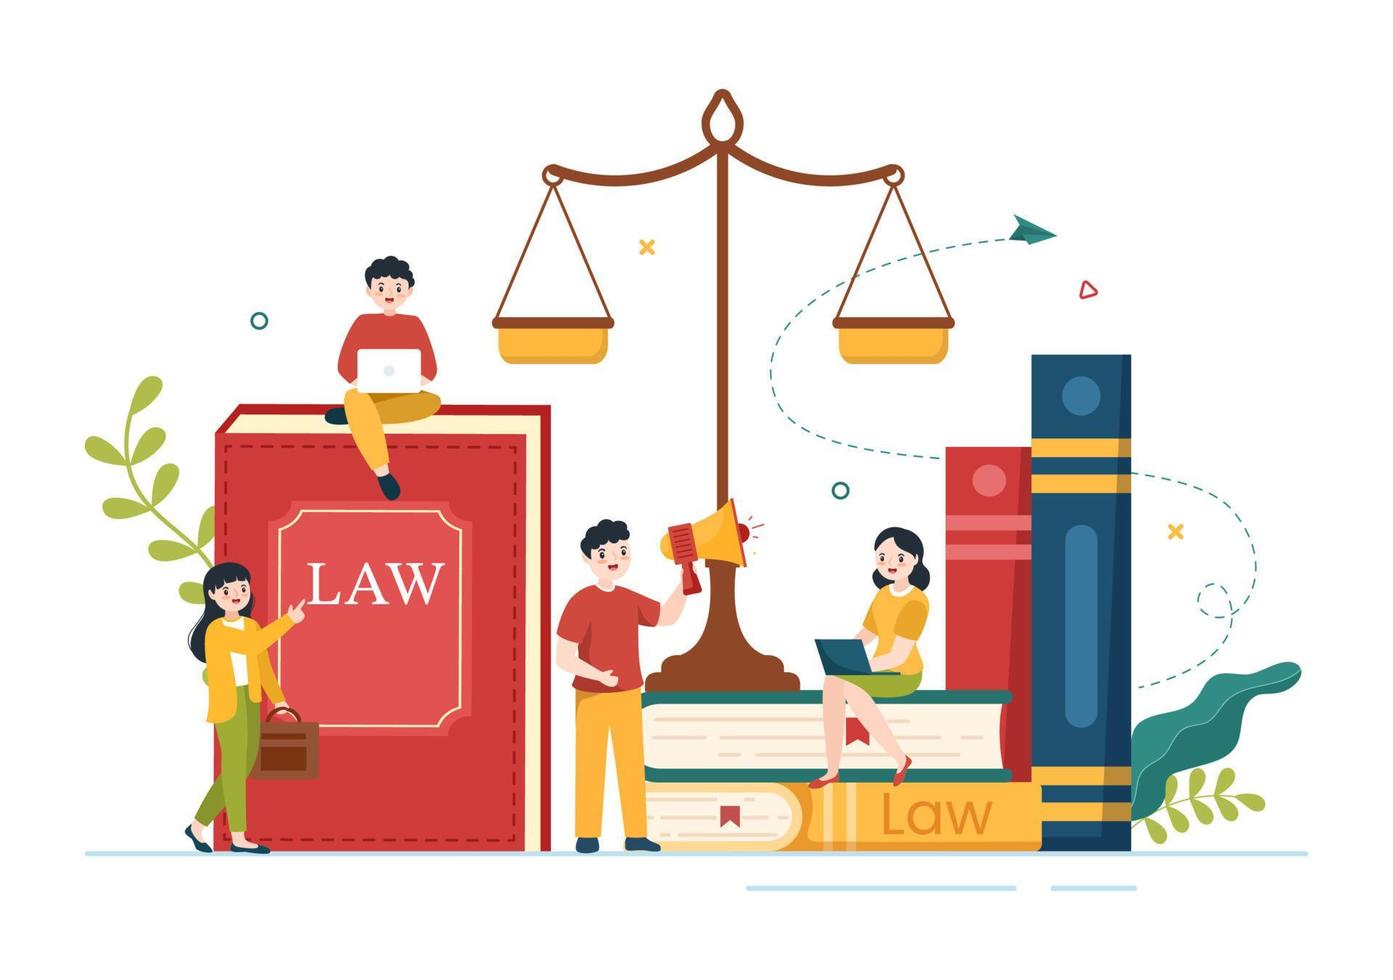 serviços de escritório de advocacia com justiça, assessoria jurídica, julgamento e consultor de advogado na ilustração de modelos desenhados à mão de pôster de desenho animado plano vetor